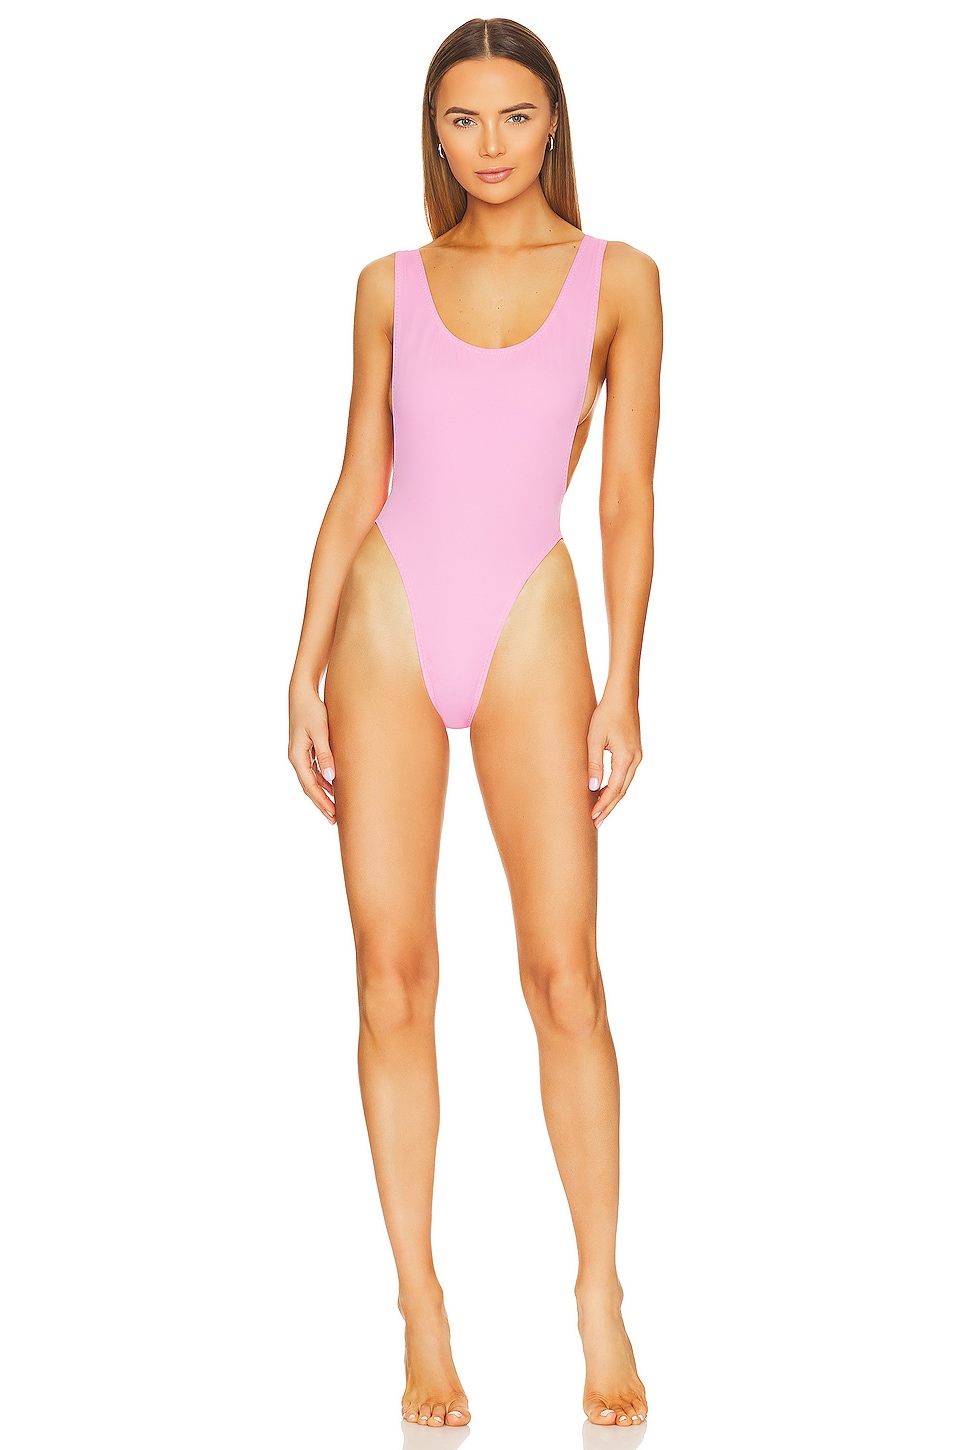 Купальник Norma Kamali Marissa, цвет Candy Pink облегающий купальник marissa norma kamali фиолетовый